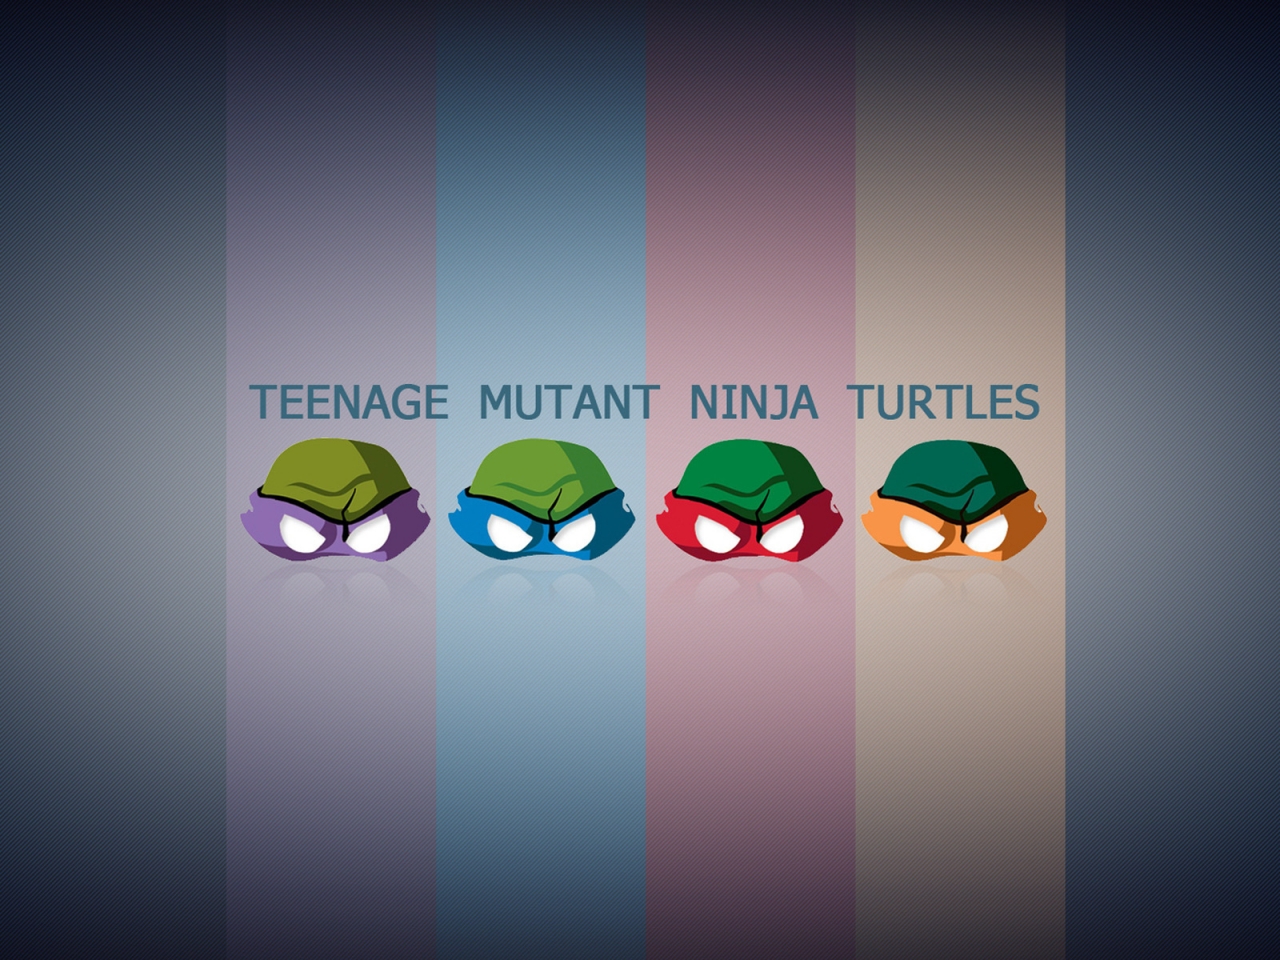 Teengae Mutant Ninja Turtles for 1280 x 960 resolution